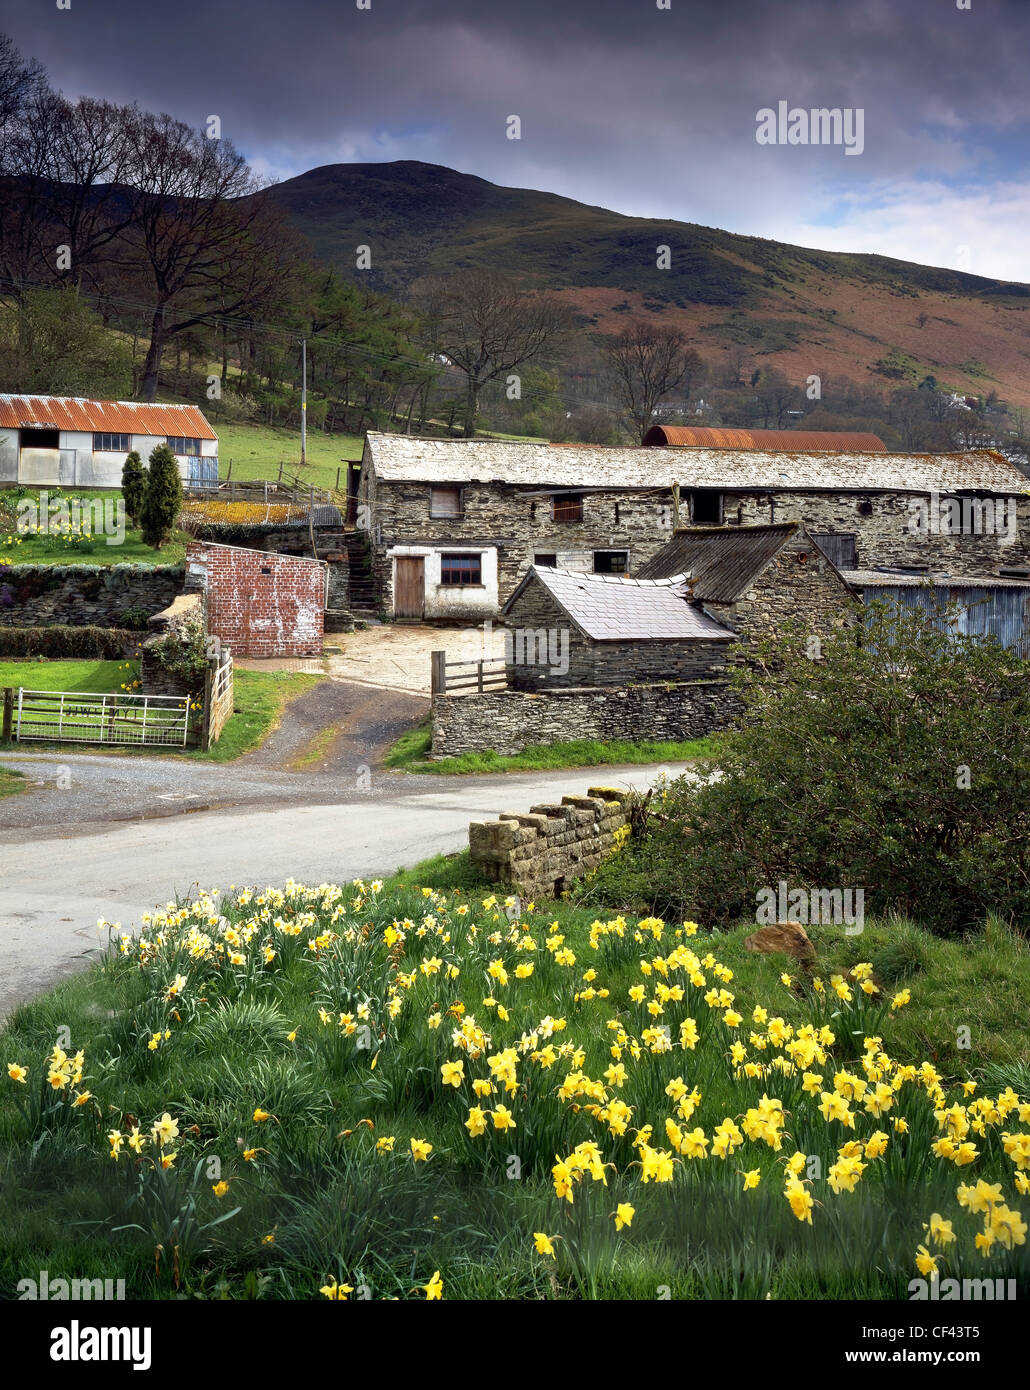 Les jonquilles fleurissent à côté d'un petit chemin de campagne et de vieux bâtiments de ferme dans une vallée éloignée dans le Nord du Pays de Galles. Banque D'Images